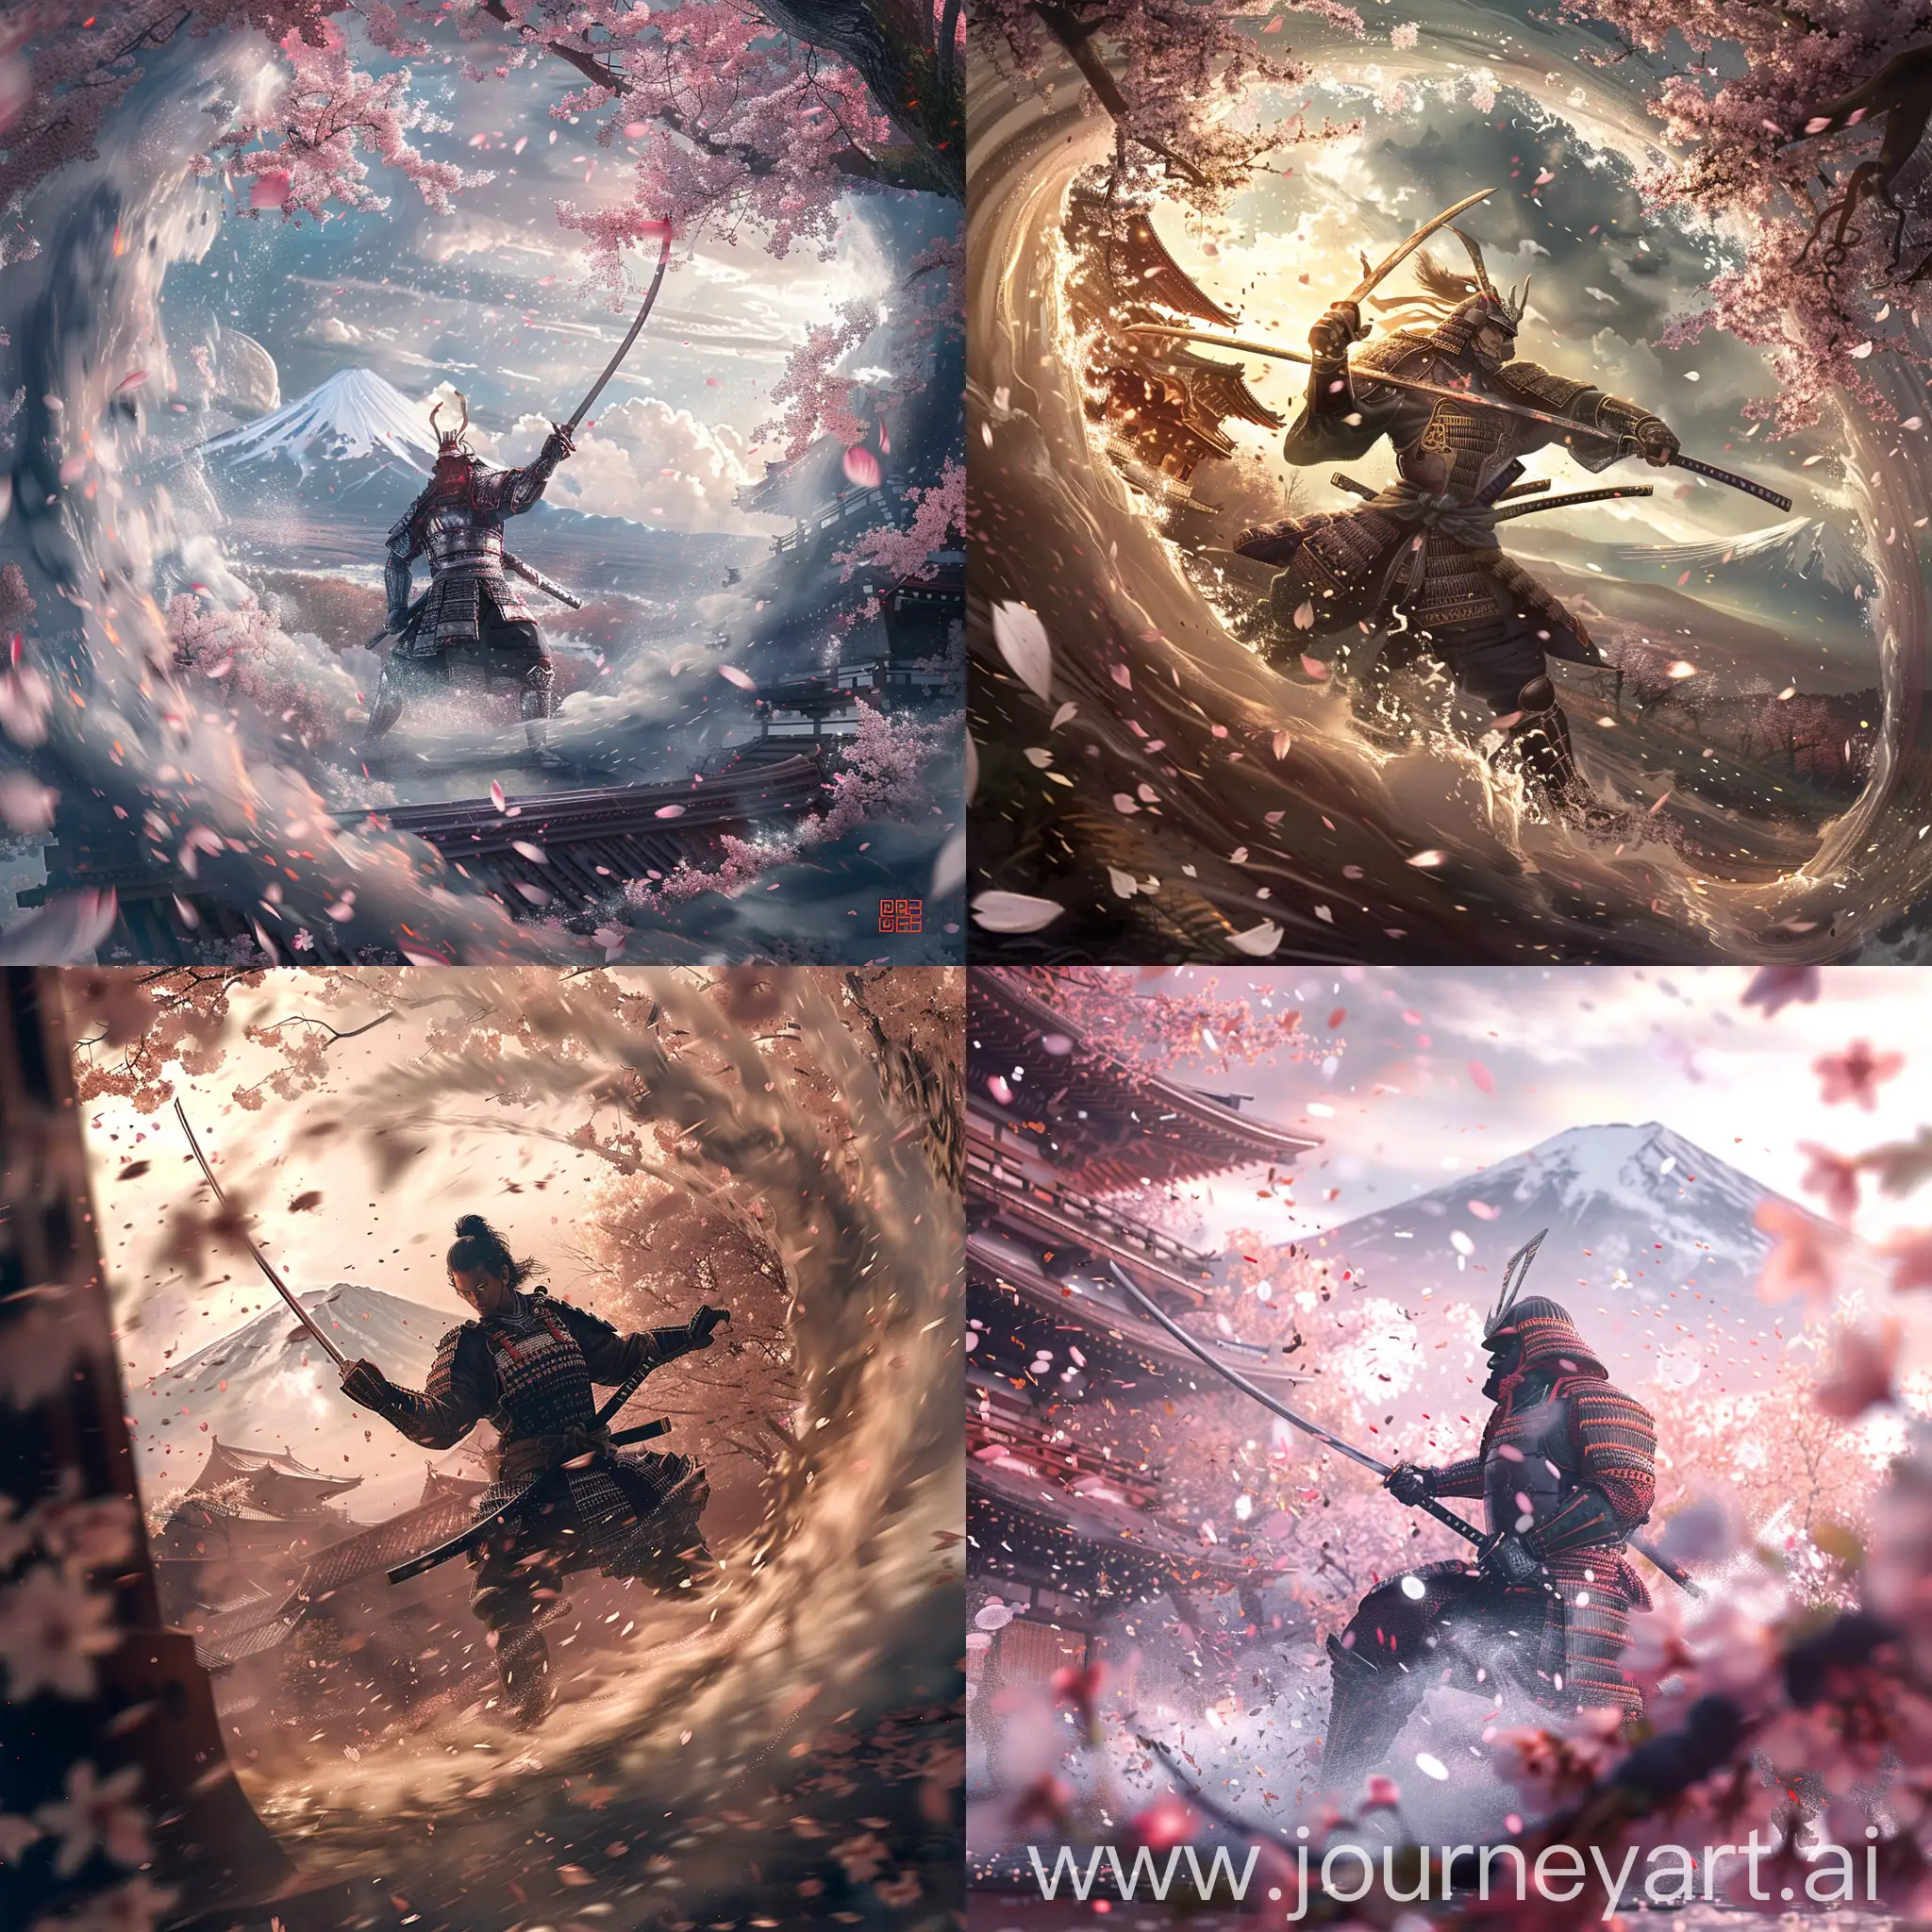 Legendary-Samurai-Warrior-Amidst-Cherry-Blossom-Storm